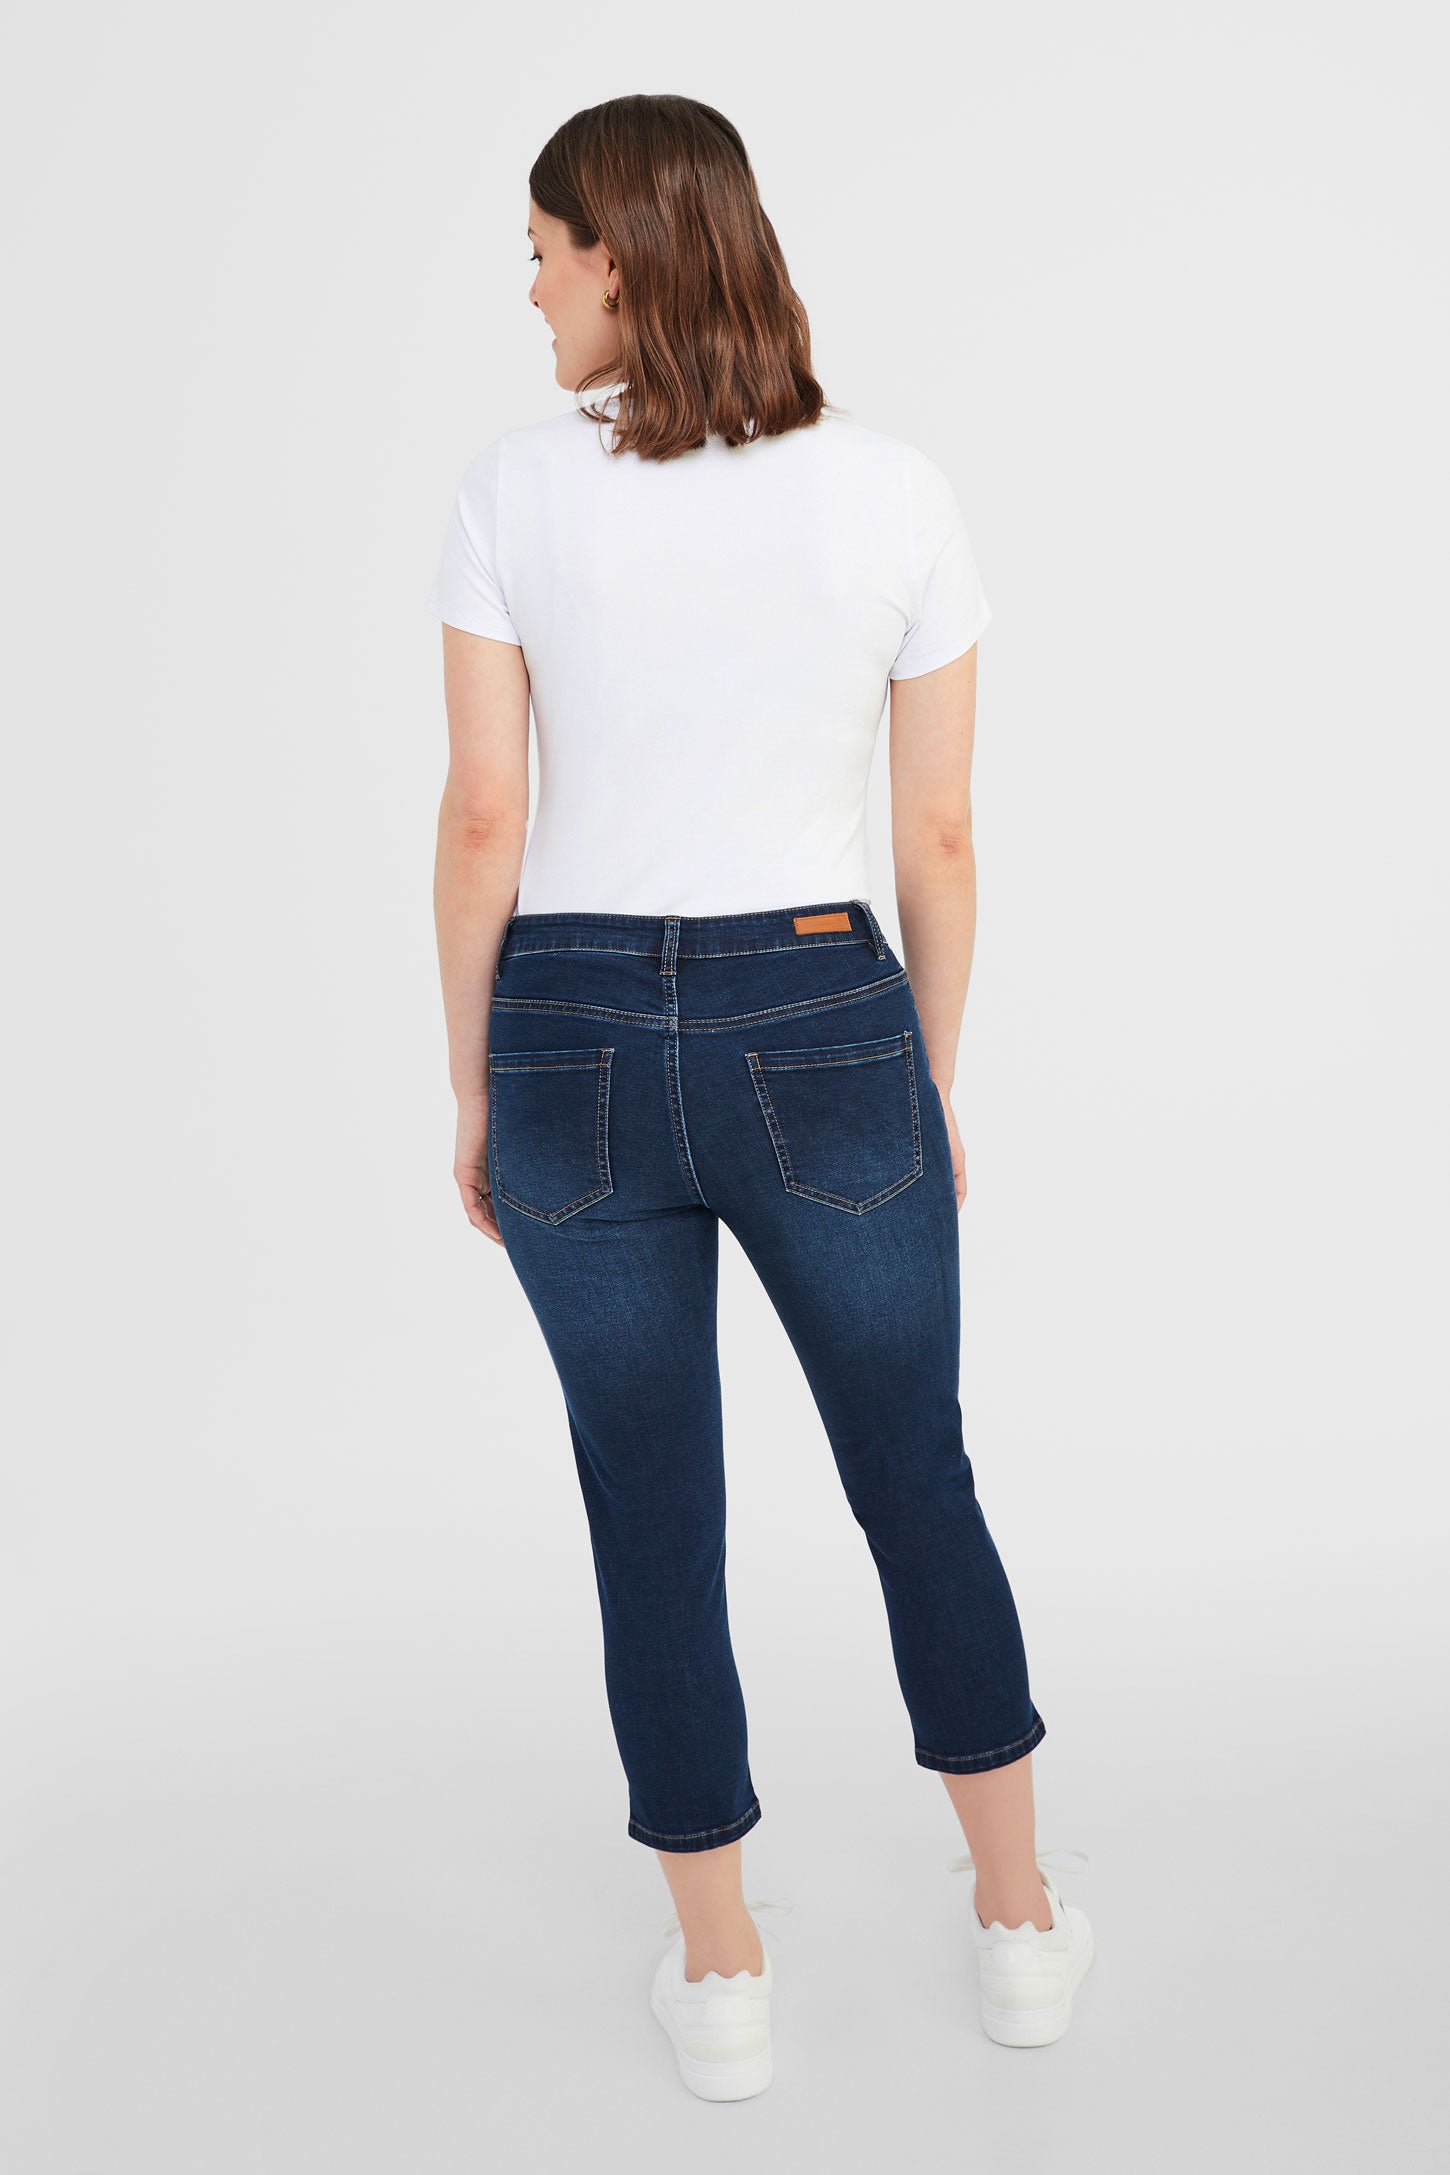 Capri 5 poches en jeans - Femme && BLEU FONCÉ